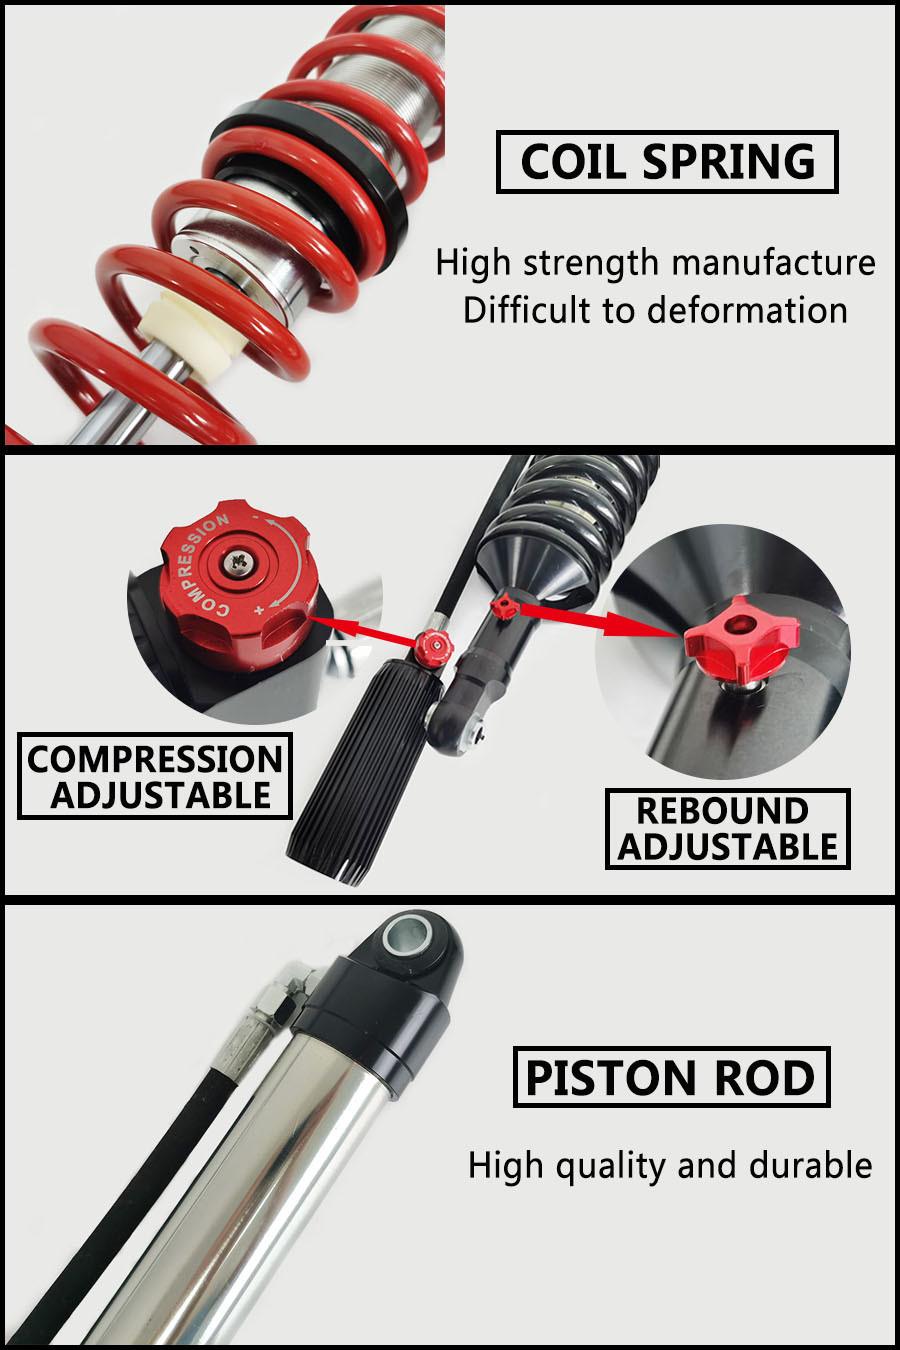 Gdst LC135 Shock Absorber Suspension Parts Hilux Adjustable Shock Absorber for Toyota 